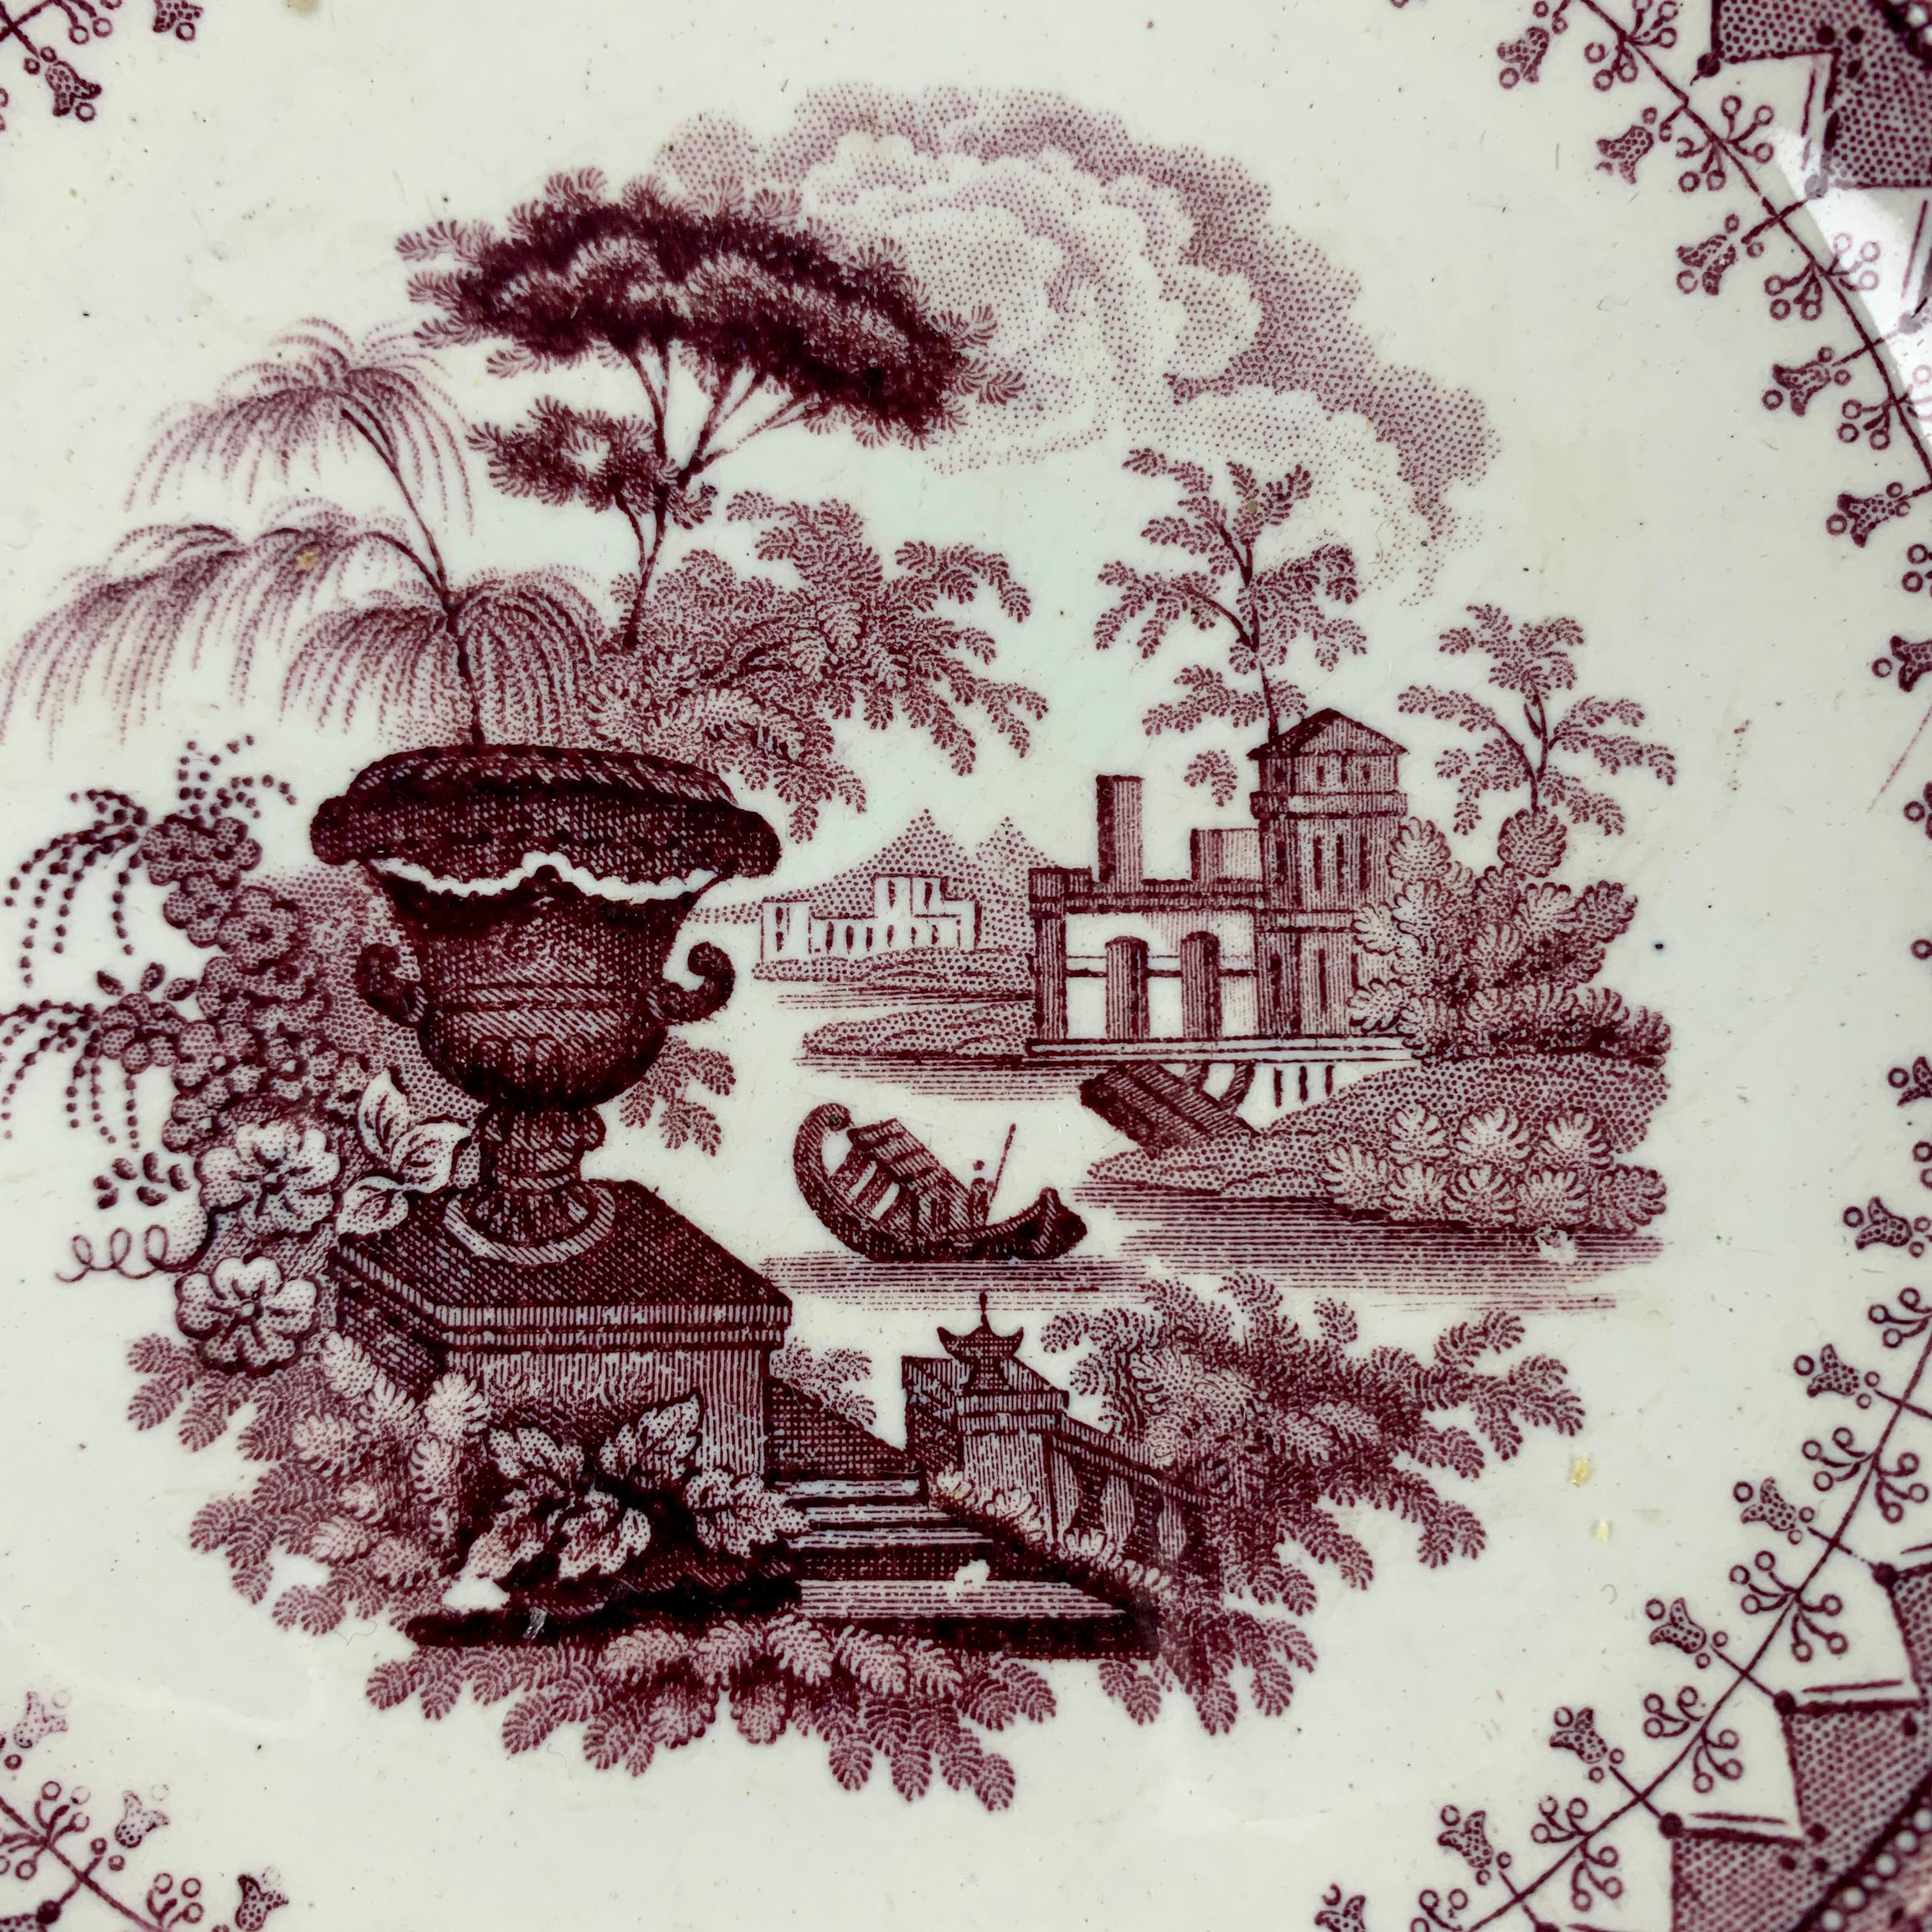 De Thomas Mayer, une assiette en faïence imprimée par transfert de couleur pourpre selon le motif Canova, Stoke-on-Trent, Staffordshire, vers 1826-1838.

Une image centrale romantique classique, montrant une grande urne au premier plan, avec une